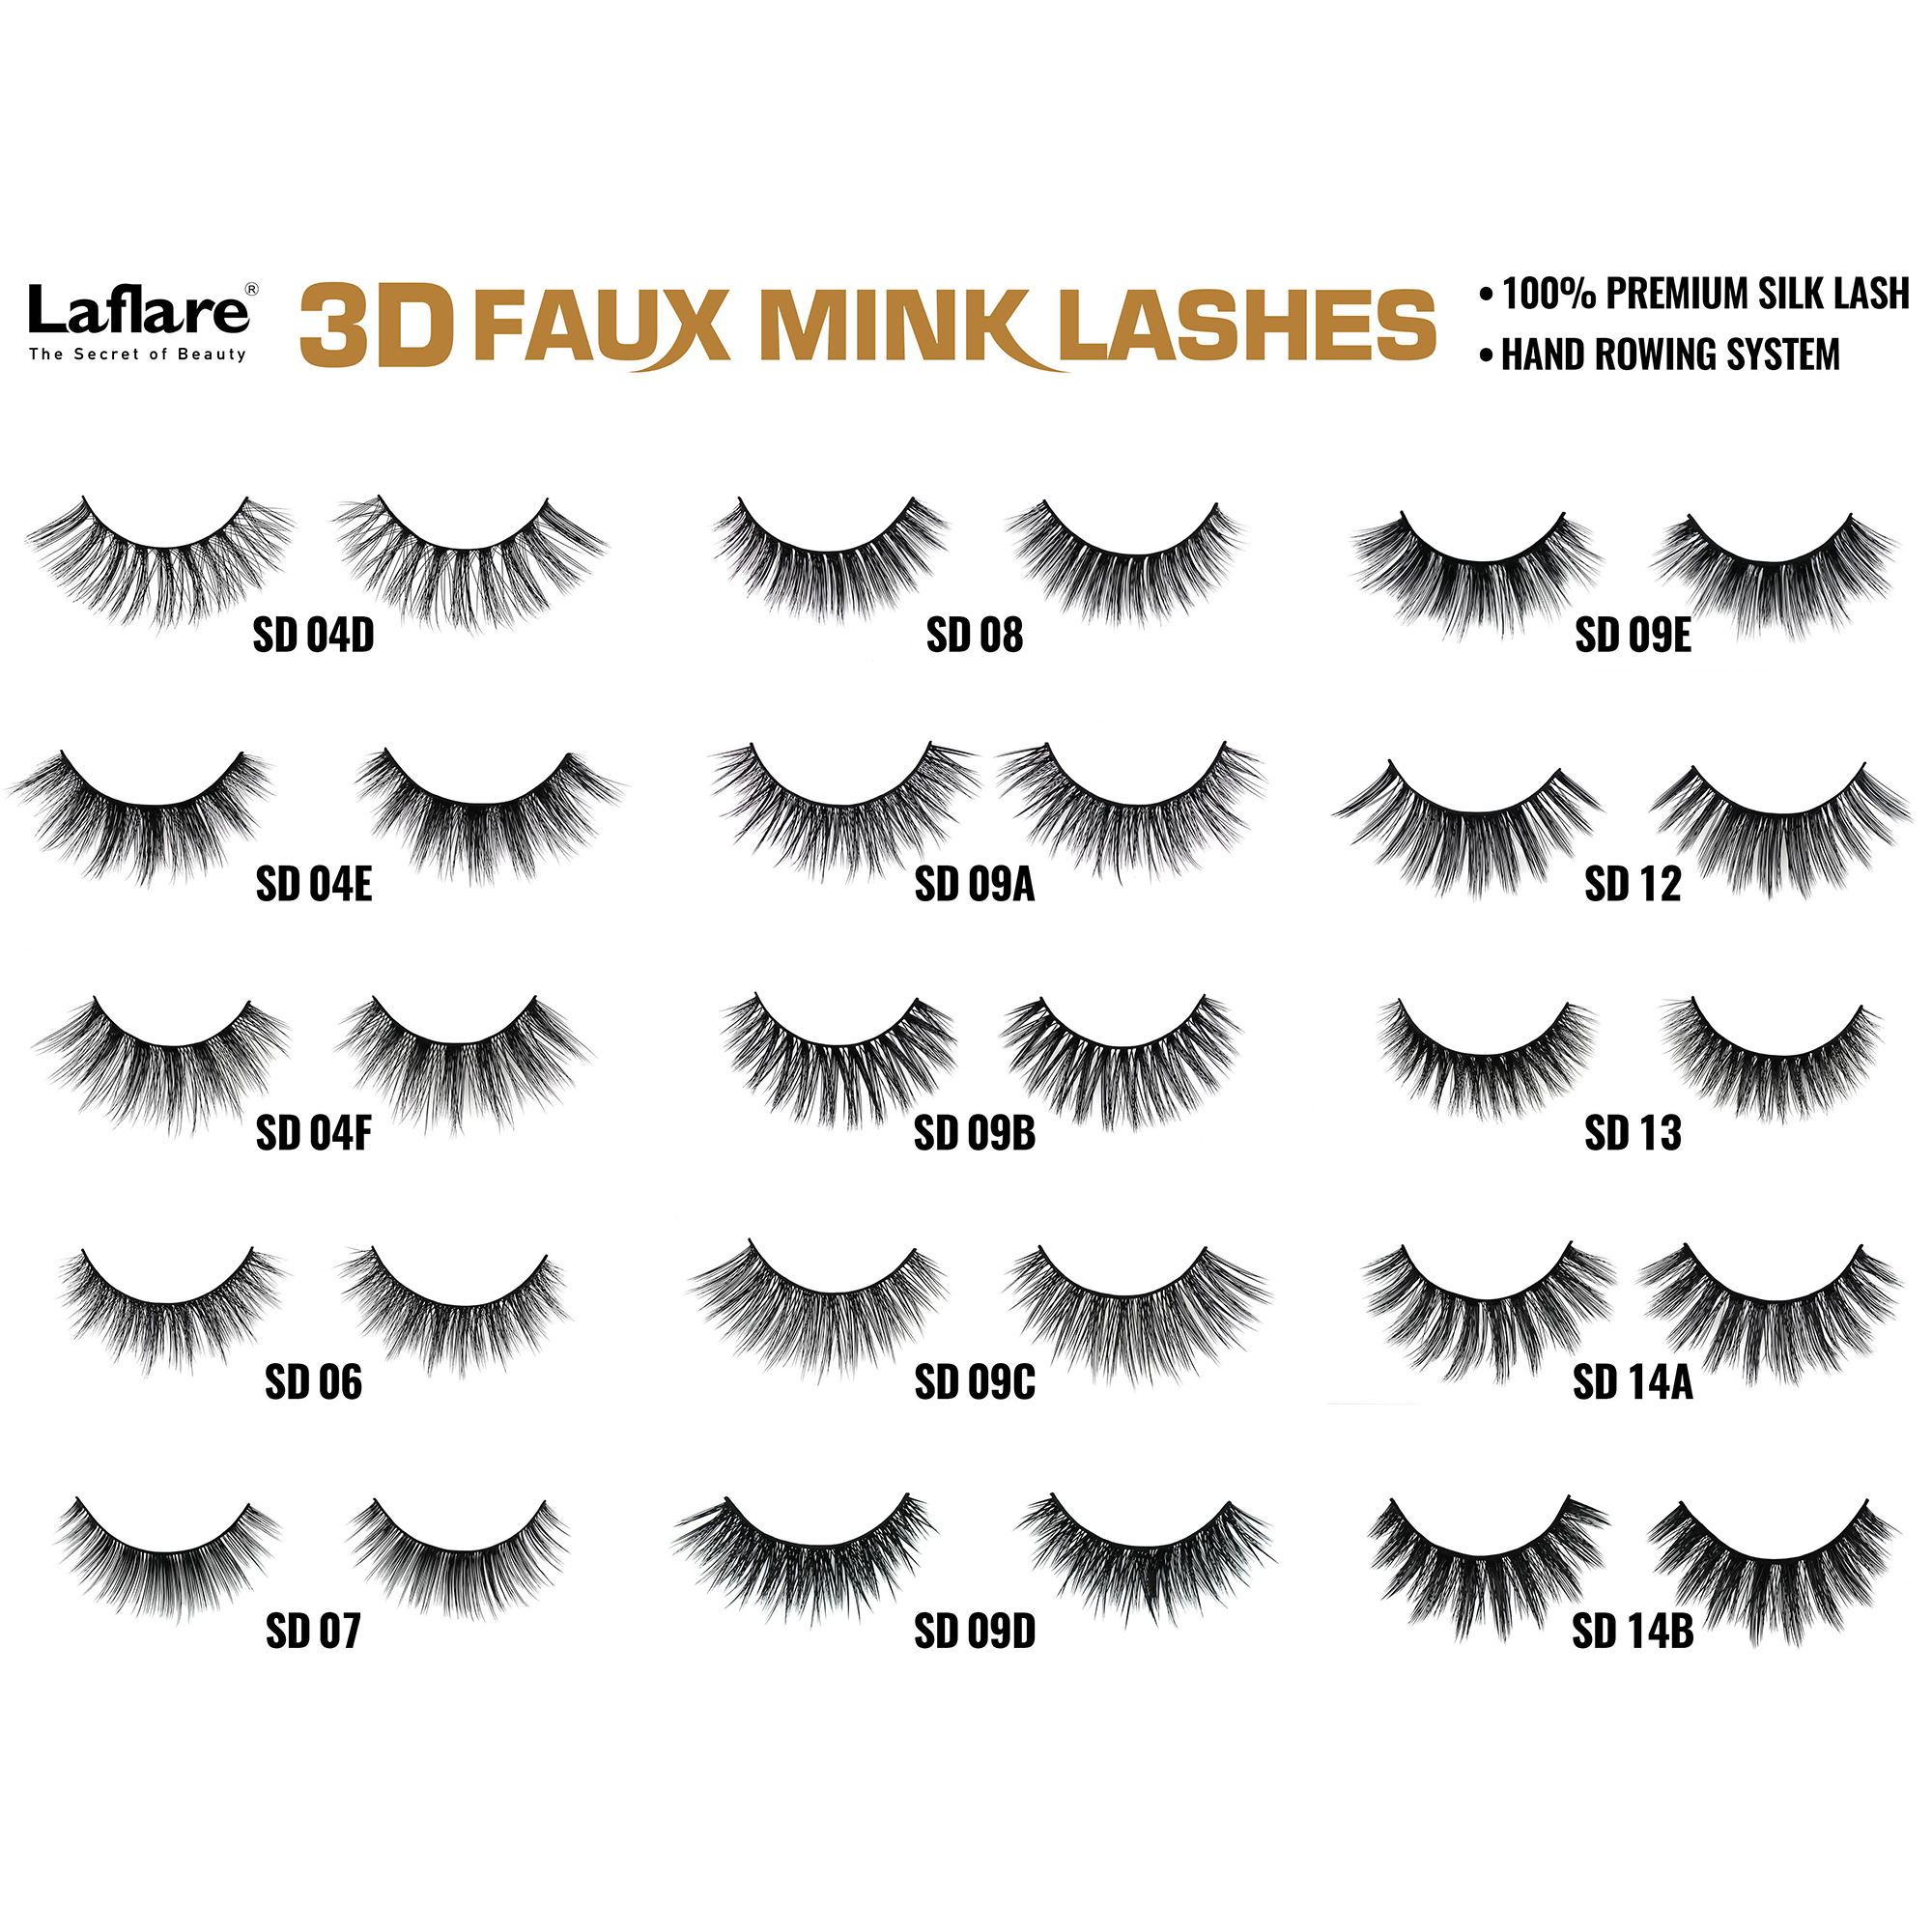 LAFLARE 3d Faux Mink Lashes - SD01F